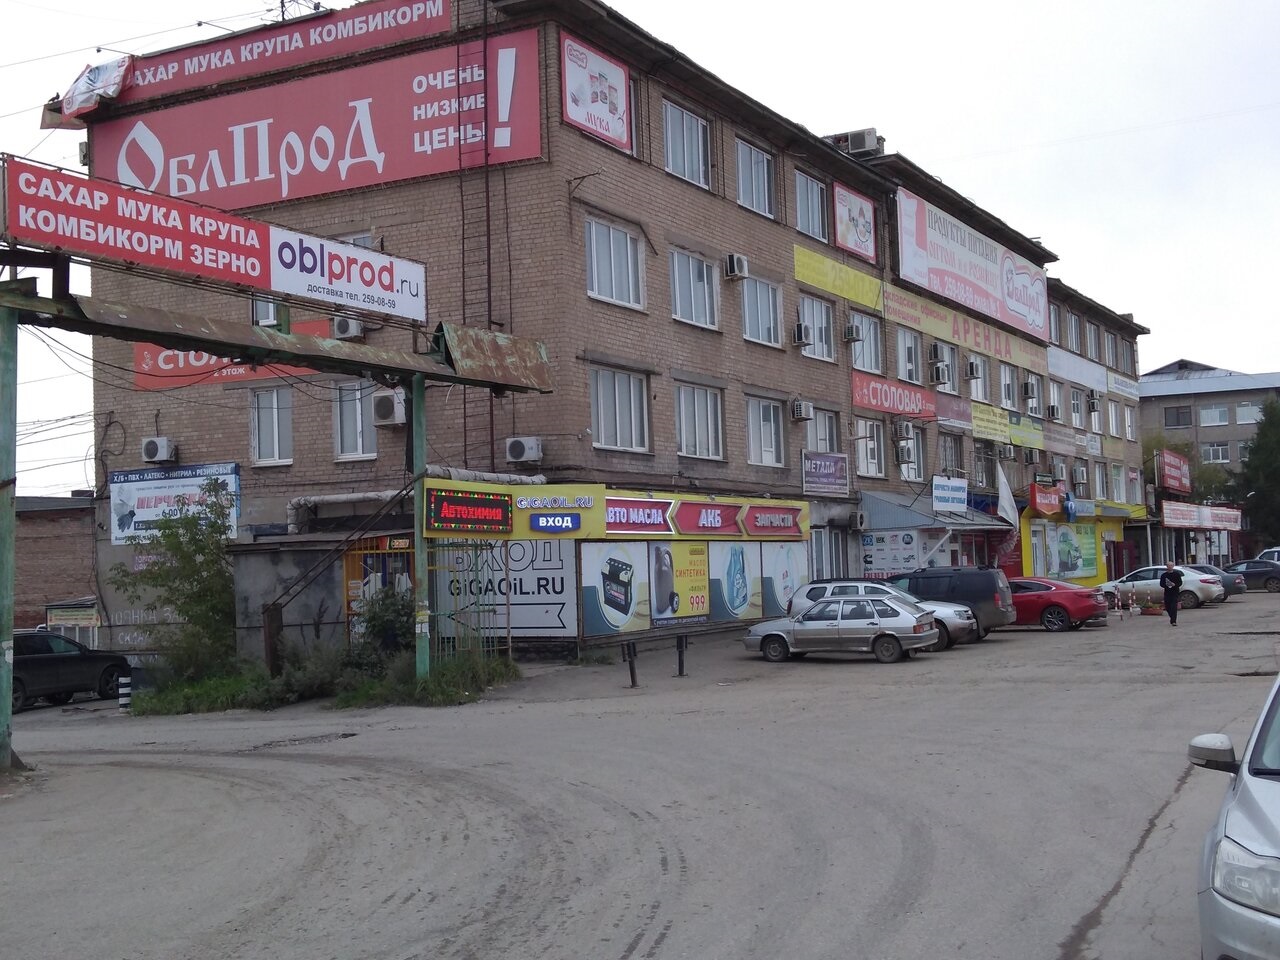 Выполненные работы - Заливка бетонных полов на базе Облпрод свыше 10 тыс м2. ул. Героев Хасана 98